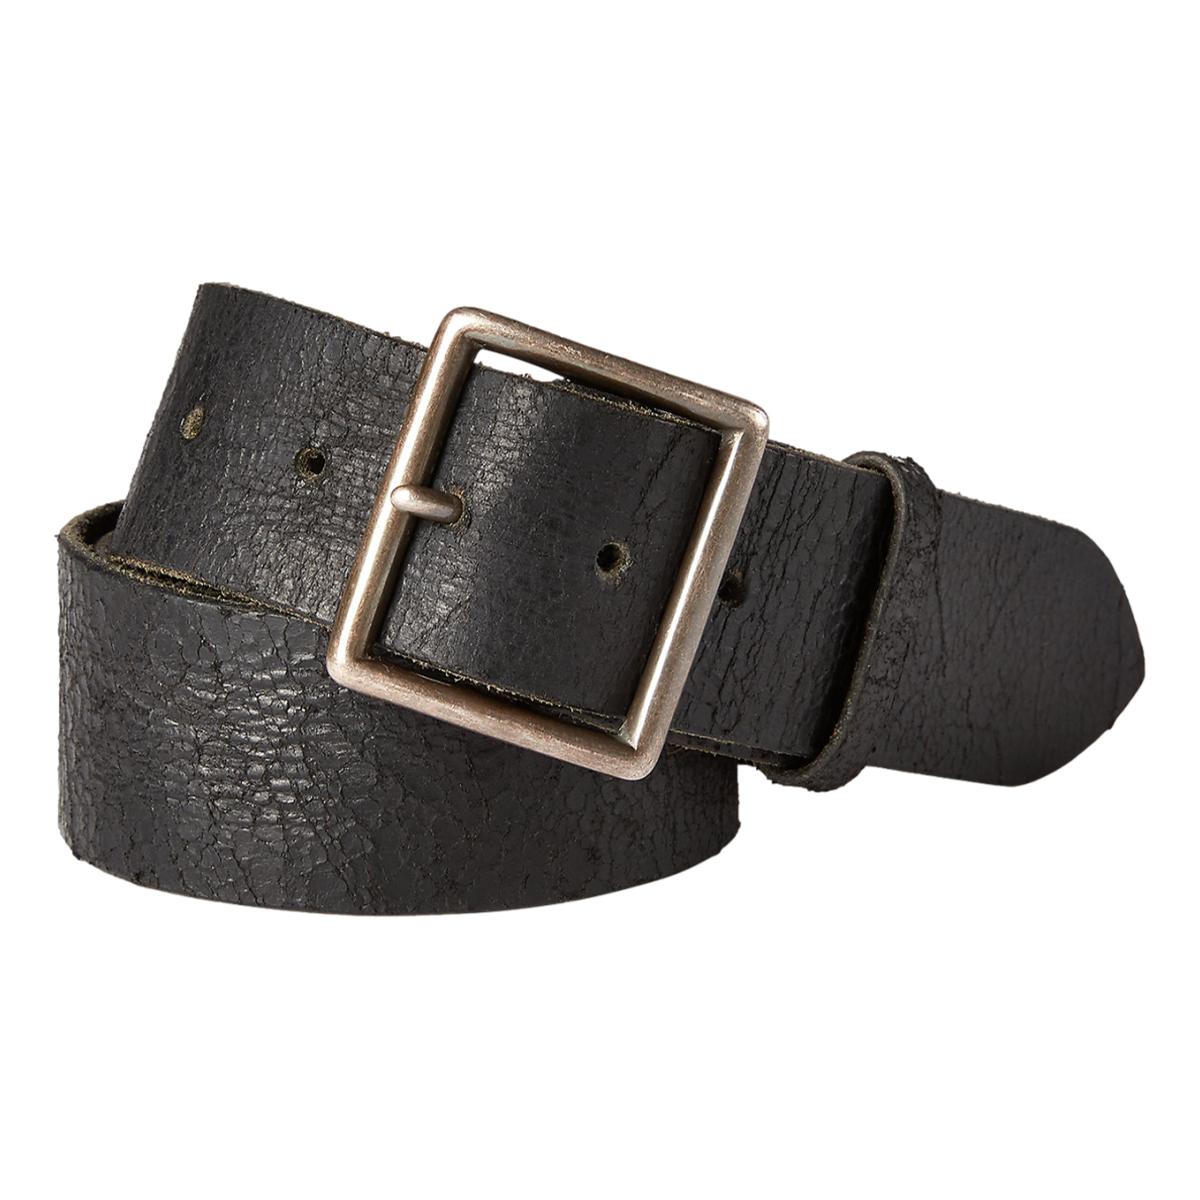 Distressed Leather Belt Vintage Black